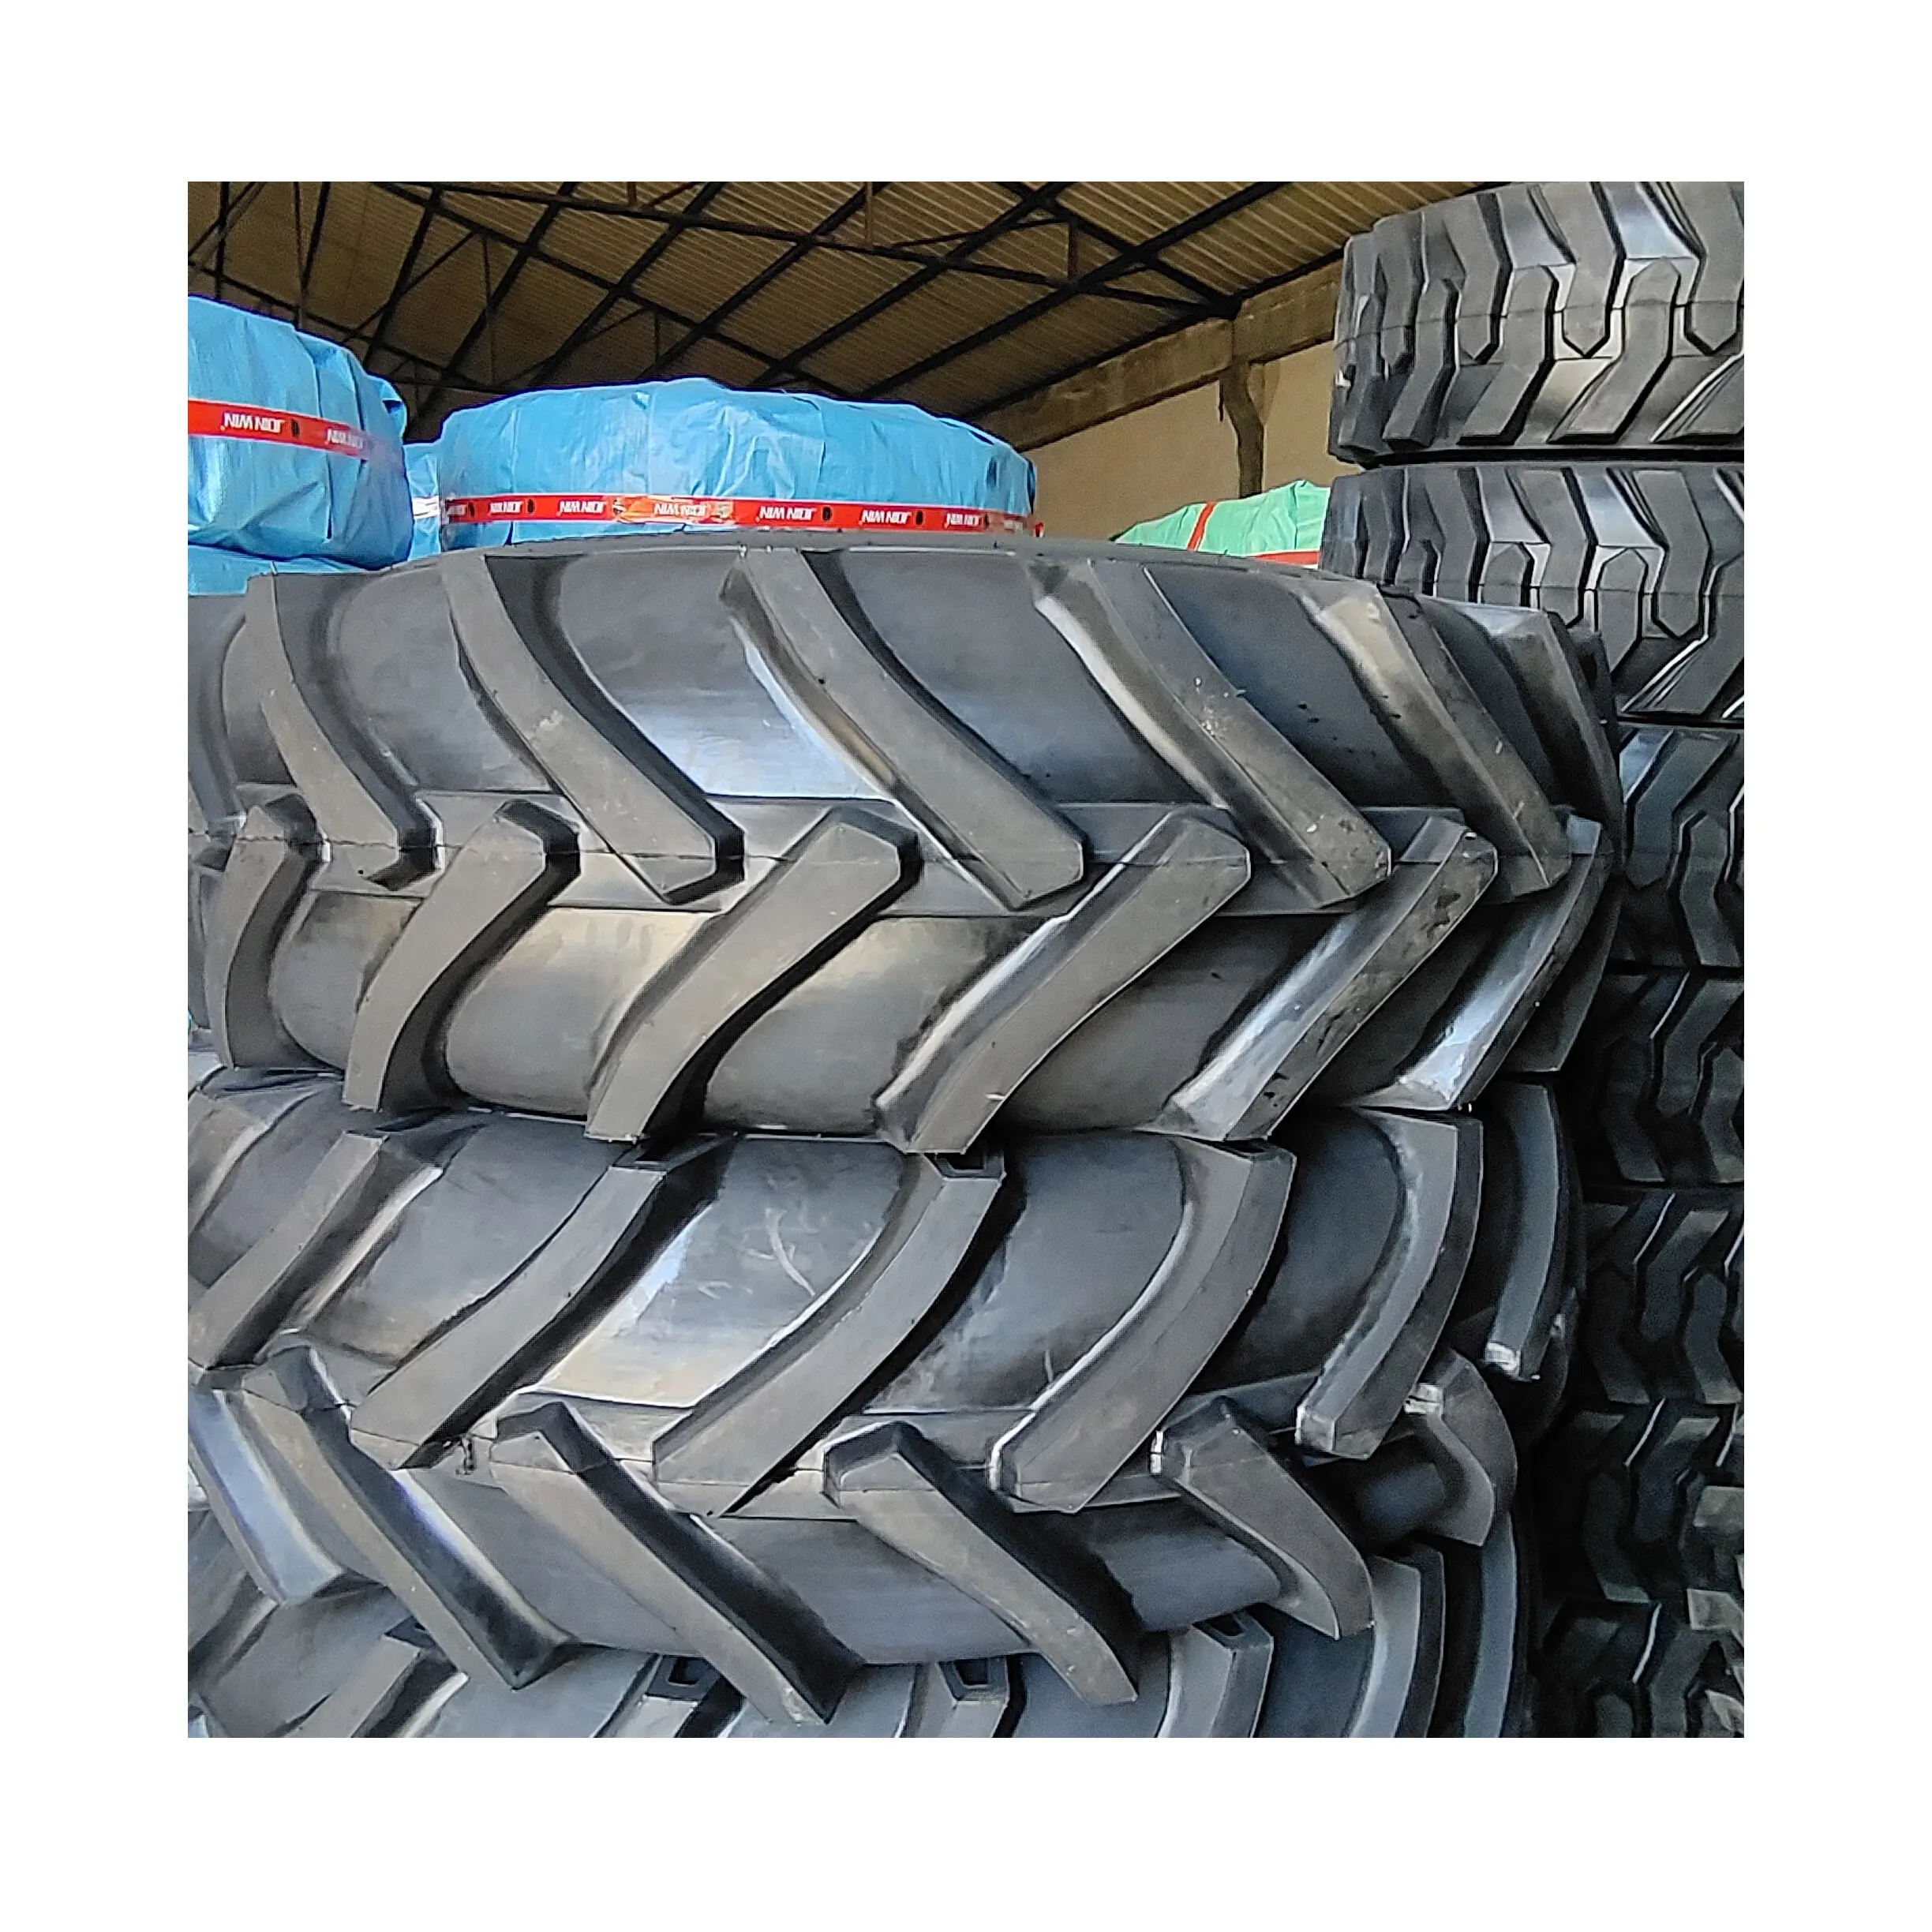 R1 18 4 34 Bias tyre Pneus de tracteur agricole pneu for Farm machinery